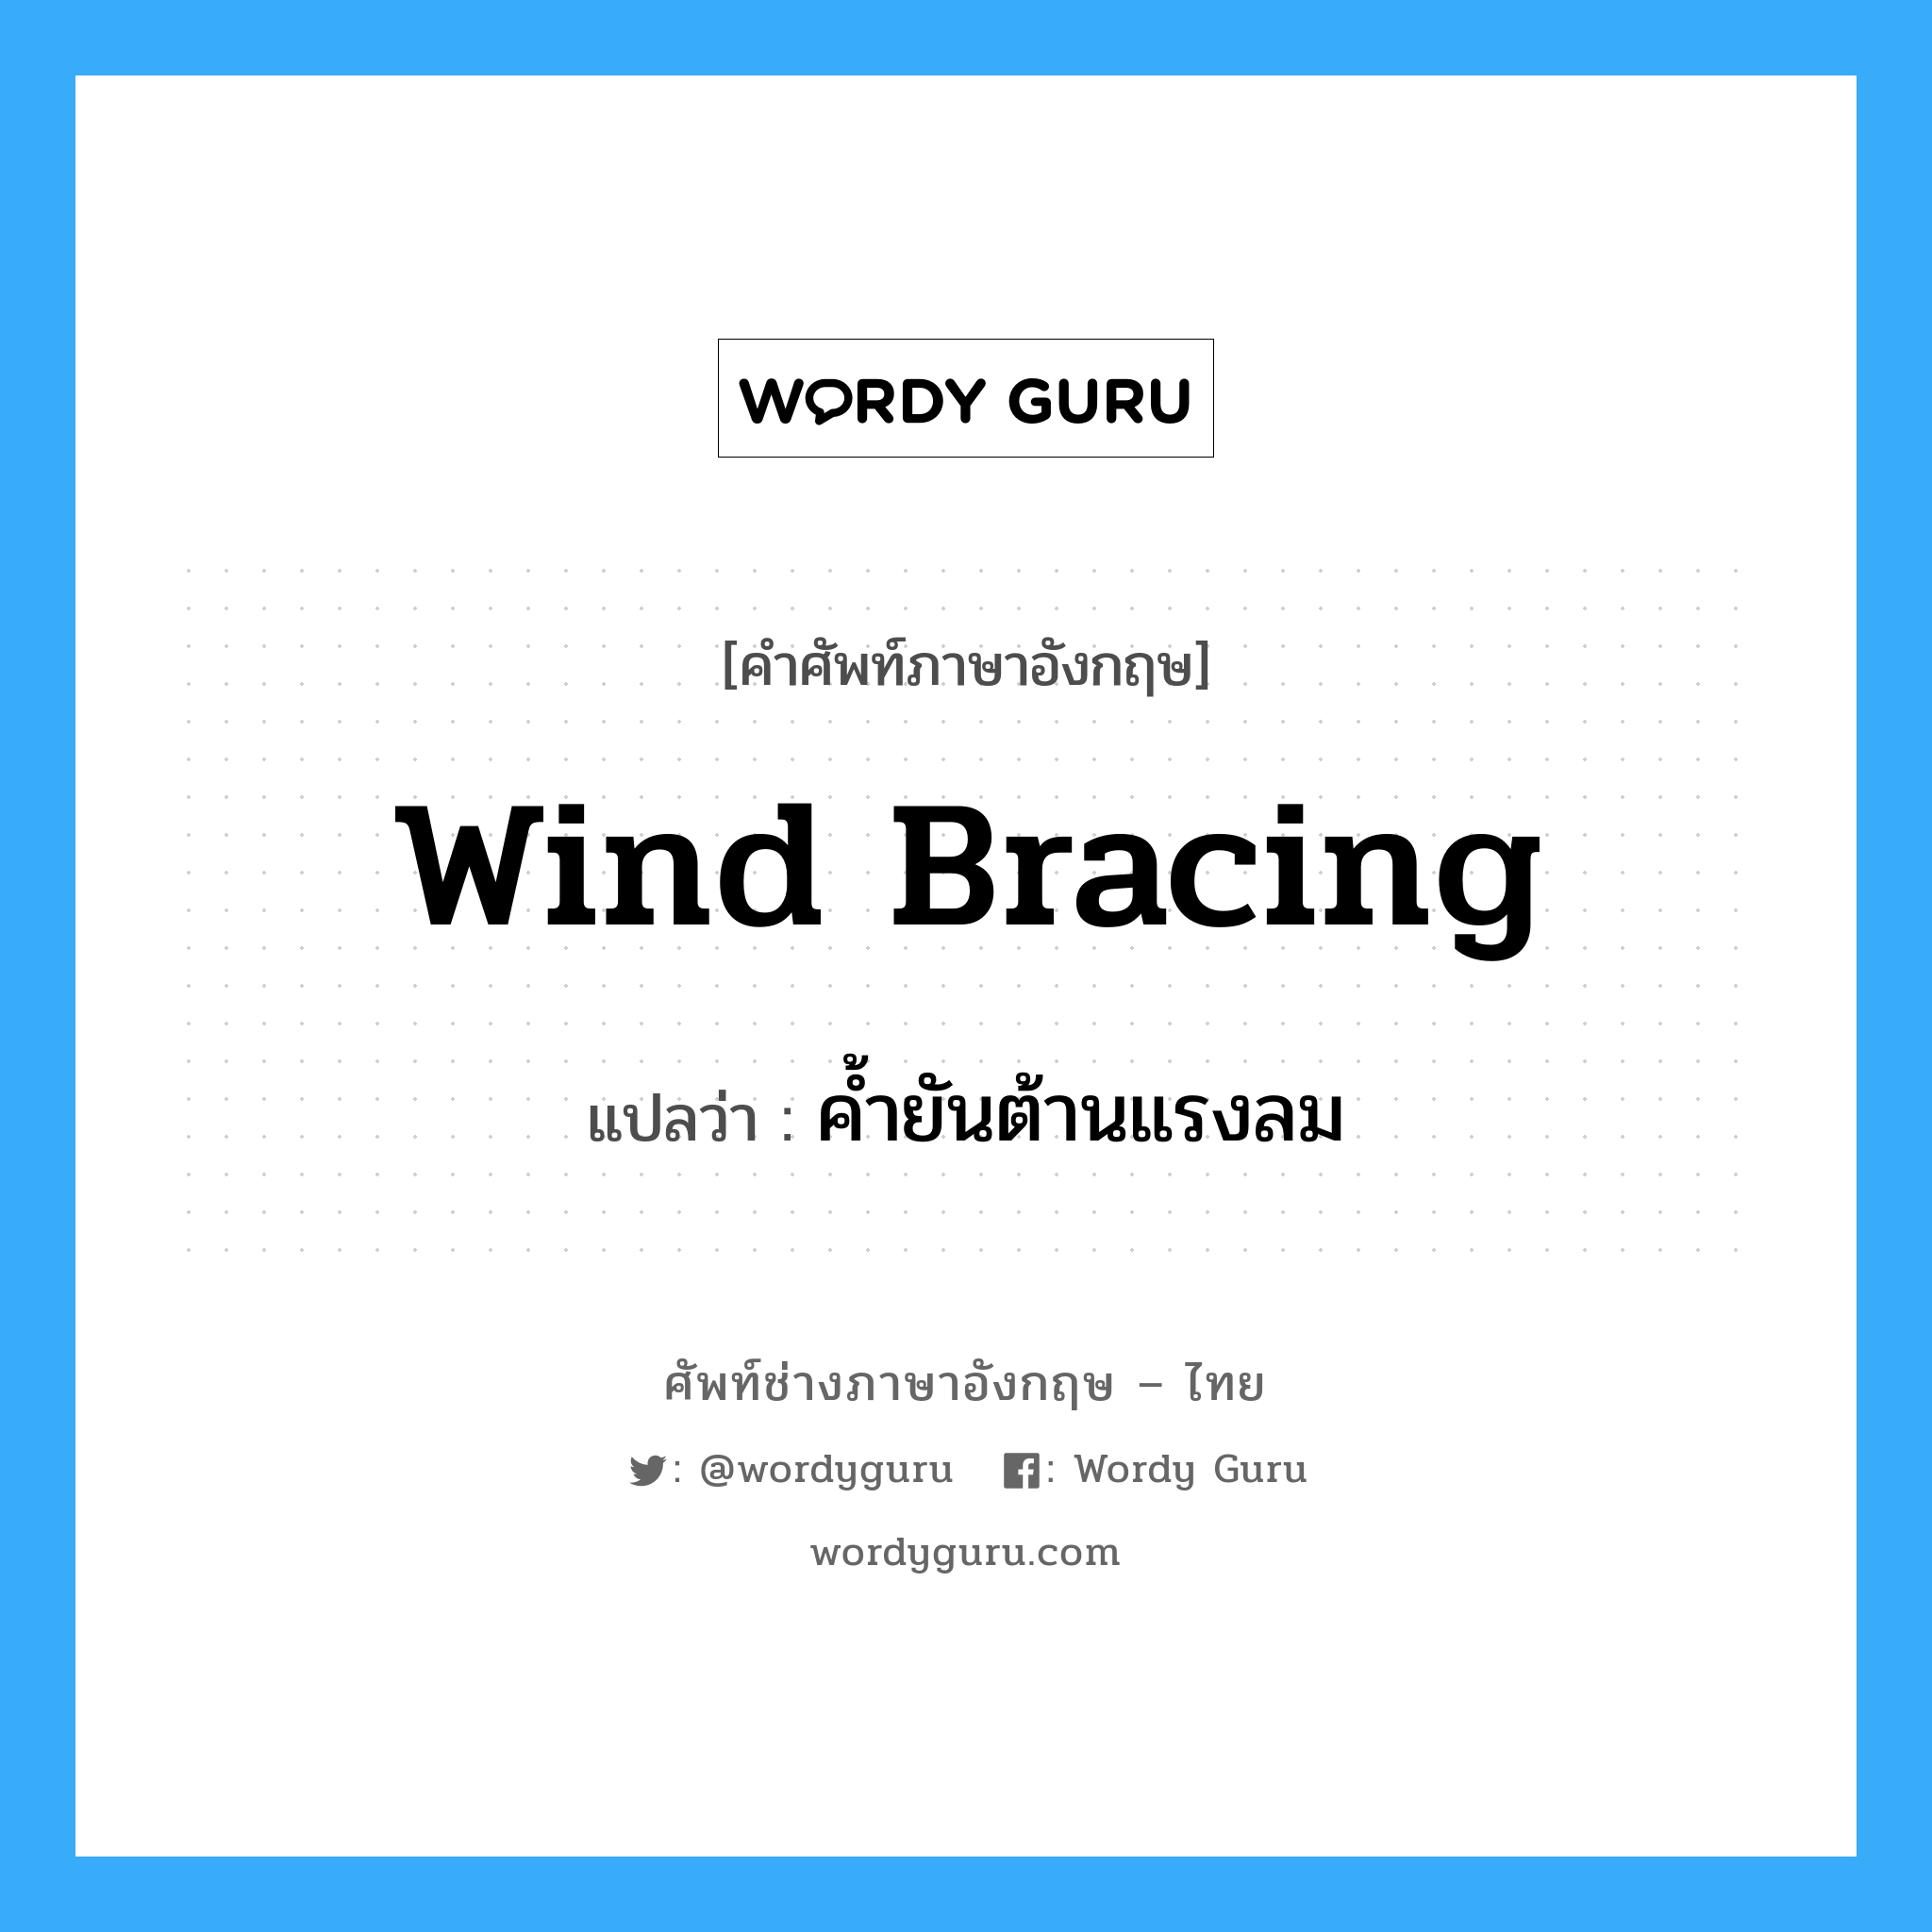 wind bracing แปลว่า?, คำศัพท์ช่างภาษาอังกฤษ - ไทย wind bracing คำศัพท์ภาษาอังกฤษ wind bracing แปลว่า ค้ำยันต้านแรงลม